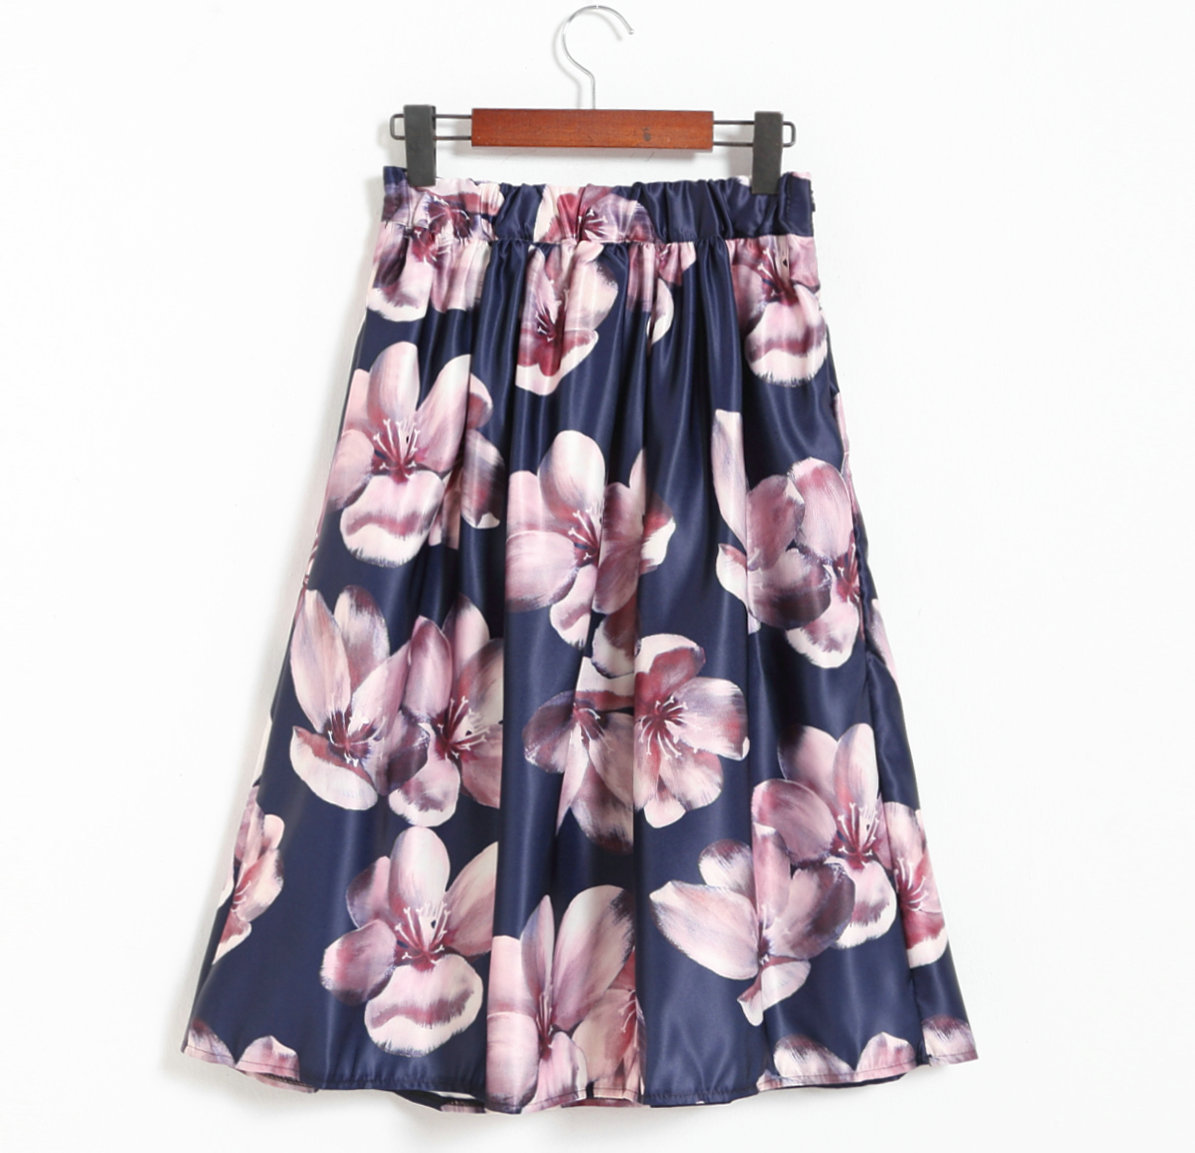 Sweet Printing Navy Blue Skirt For Women on Luulla